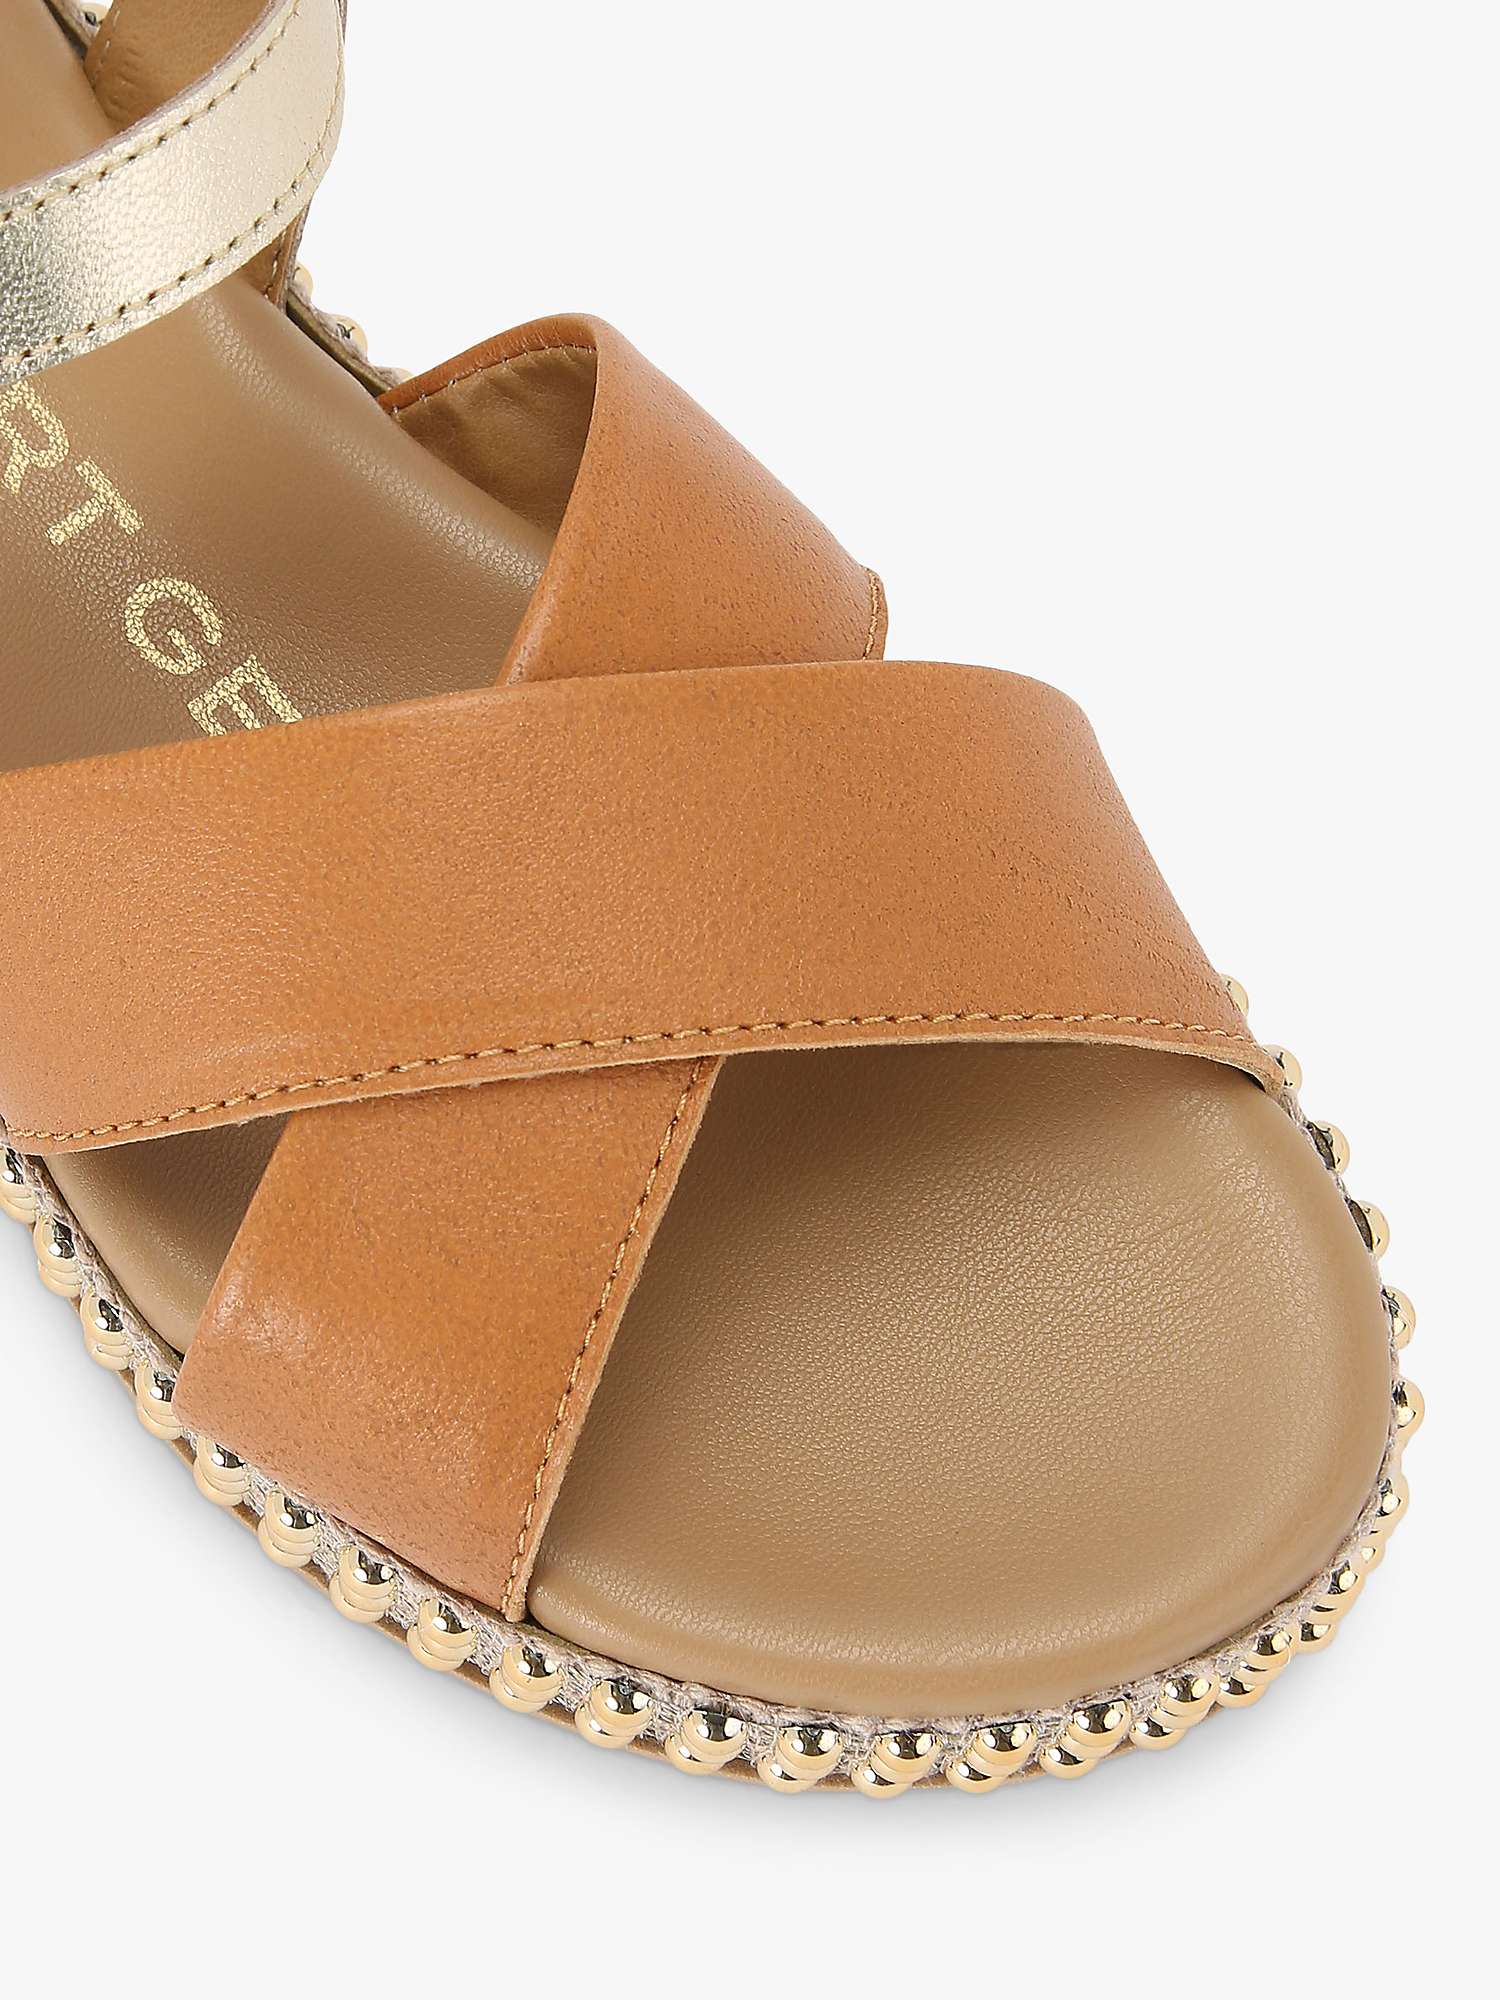 Buy KG Kurt Geiger Reya Leather Sandals Online at johnlewis.com